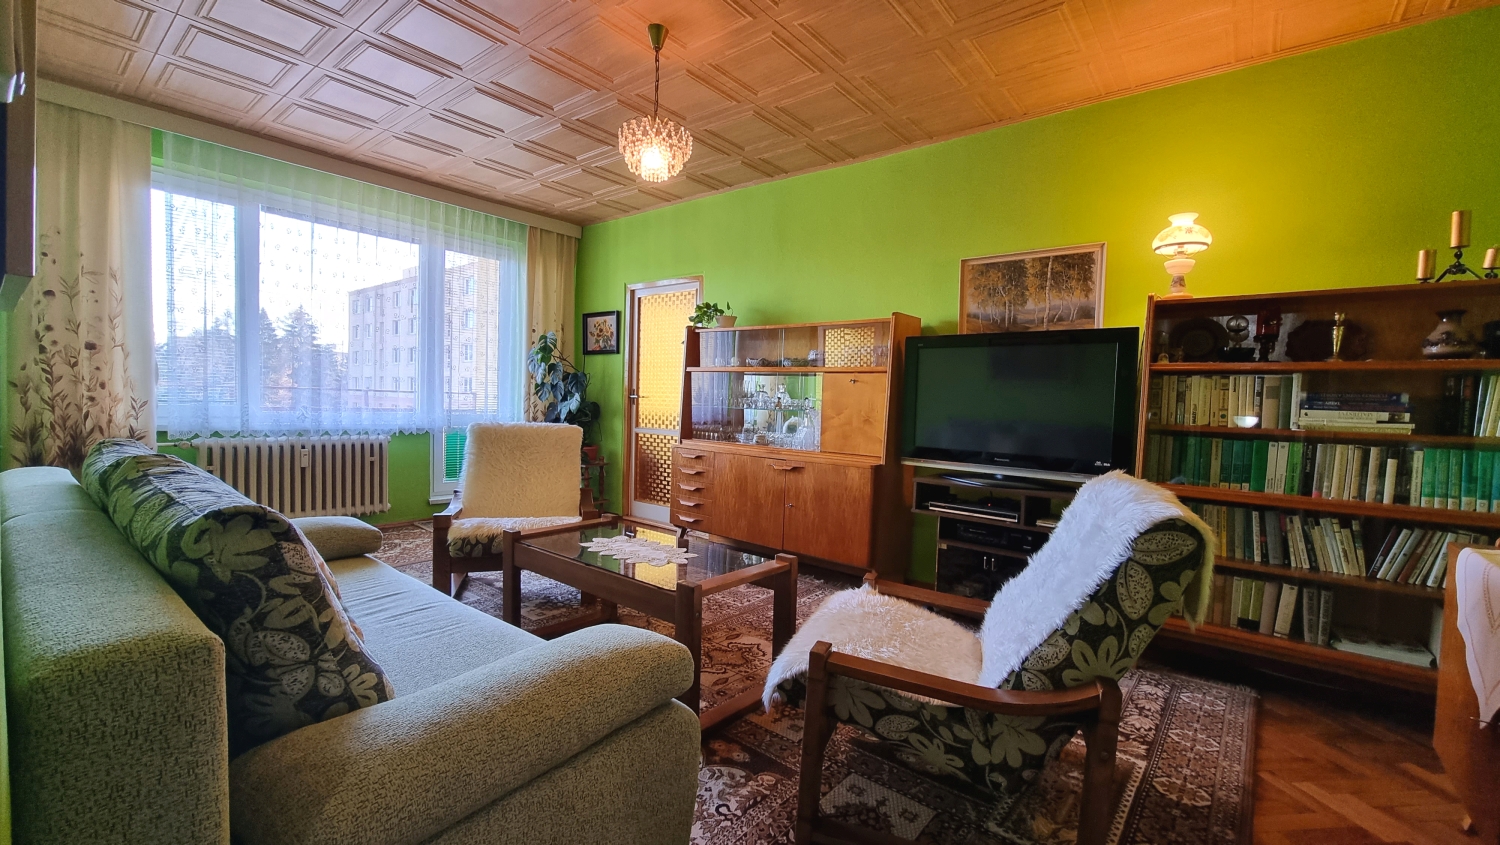 EXKLUZÍVNE! Príjemný 2-izbový byt s loggiou, výborná lokalita, predaj, Žilina – Hliny, Cena: 129.900 €